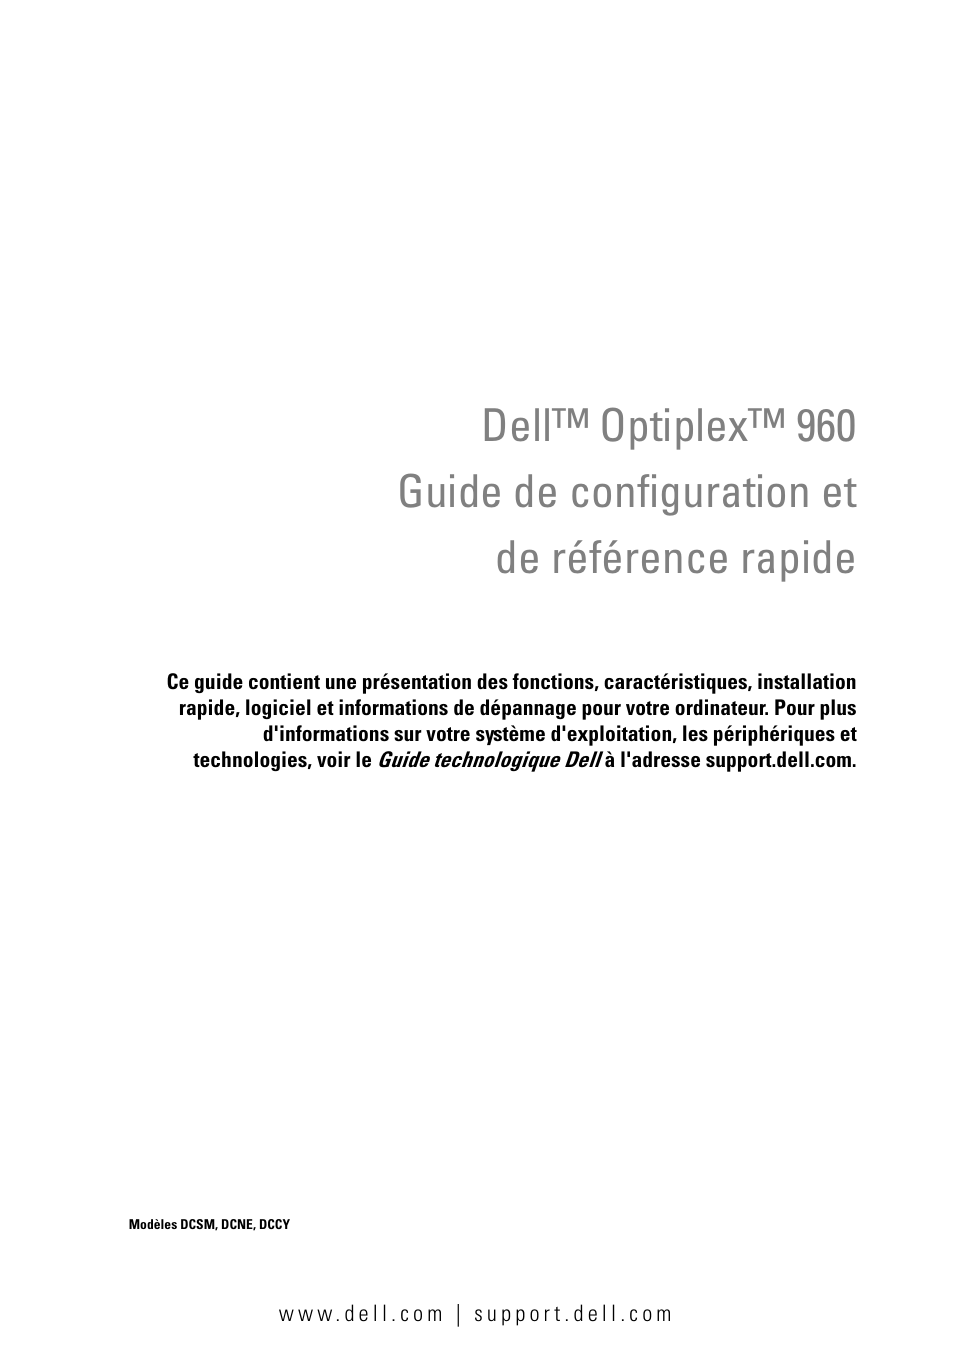 Dell OptiPlex 960 (Late 2008) Manuel d'utilisation | Pages: 74